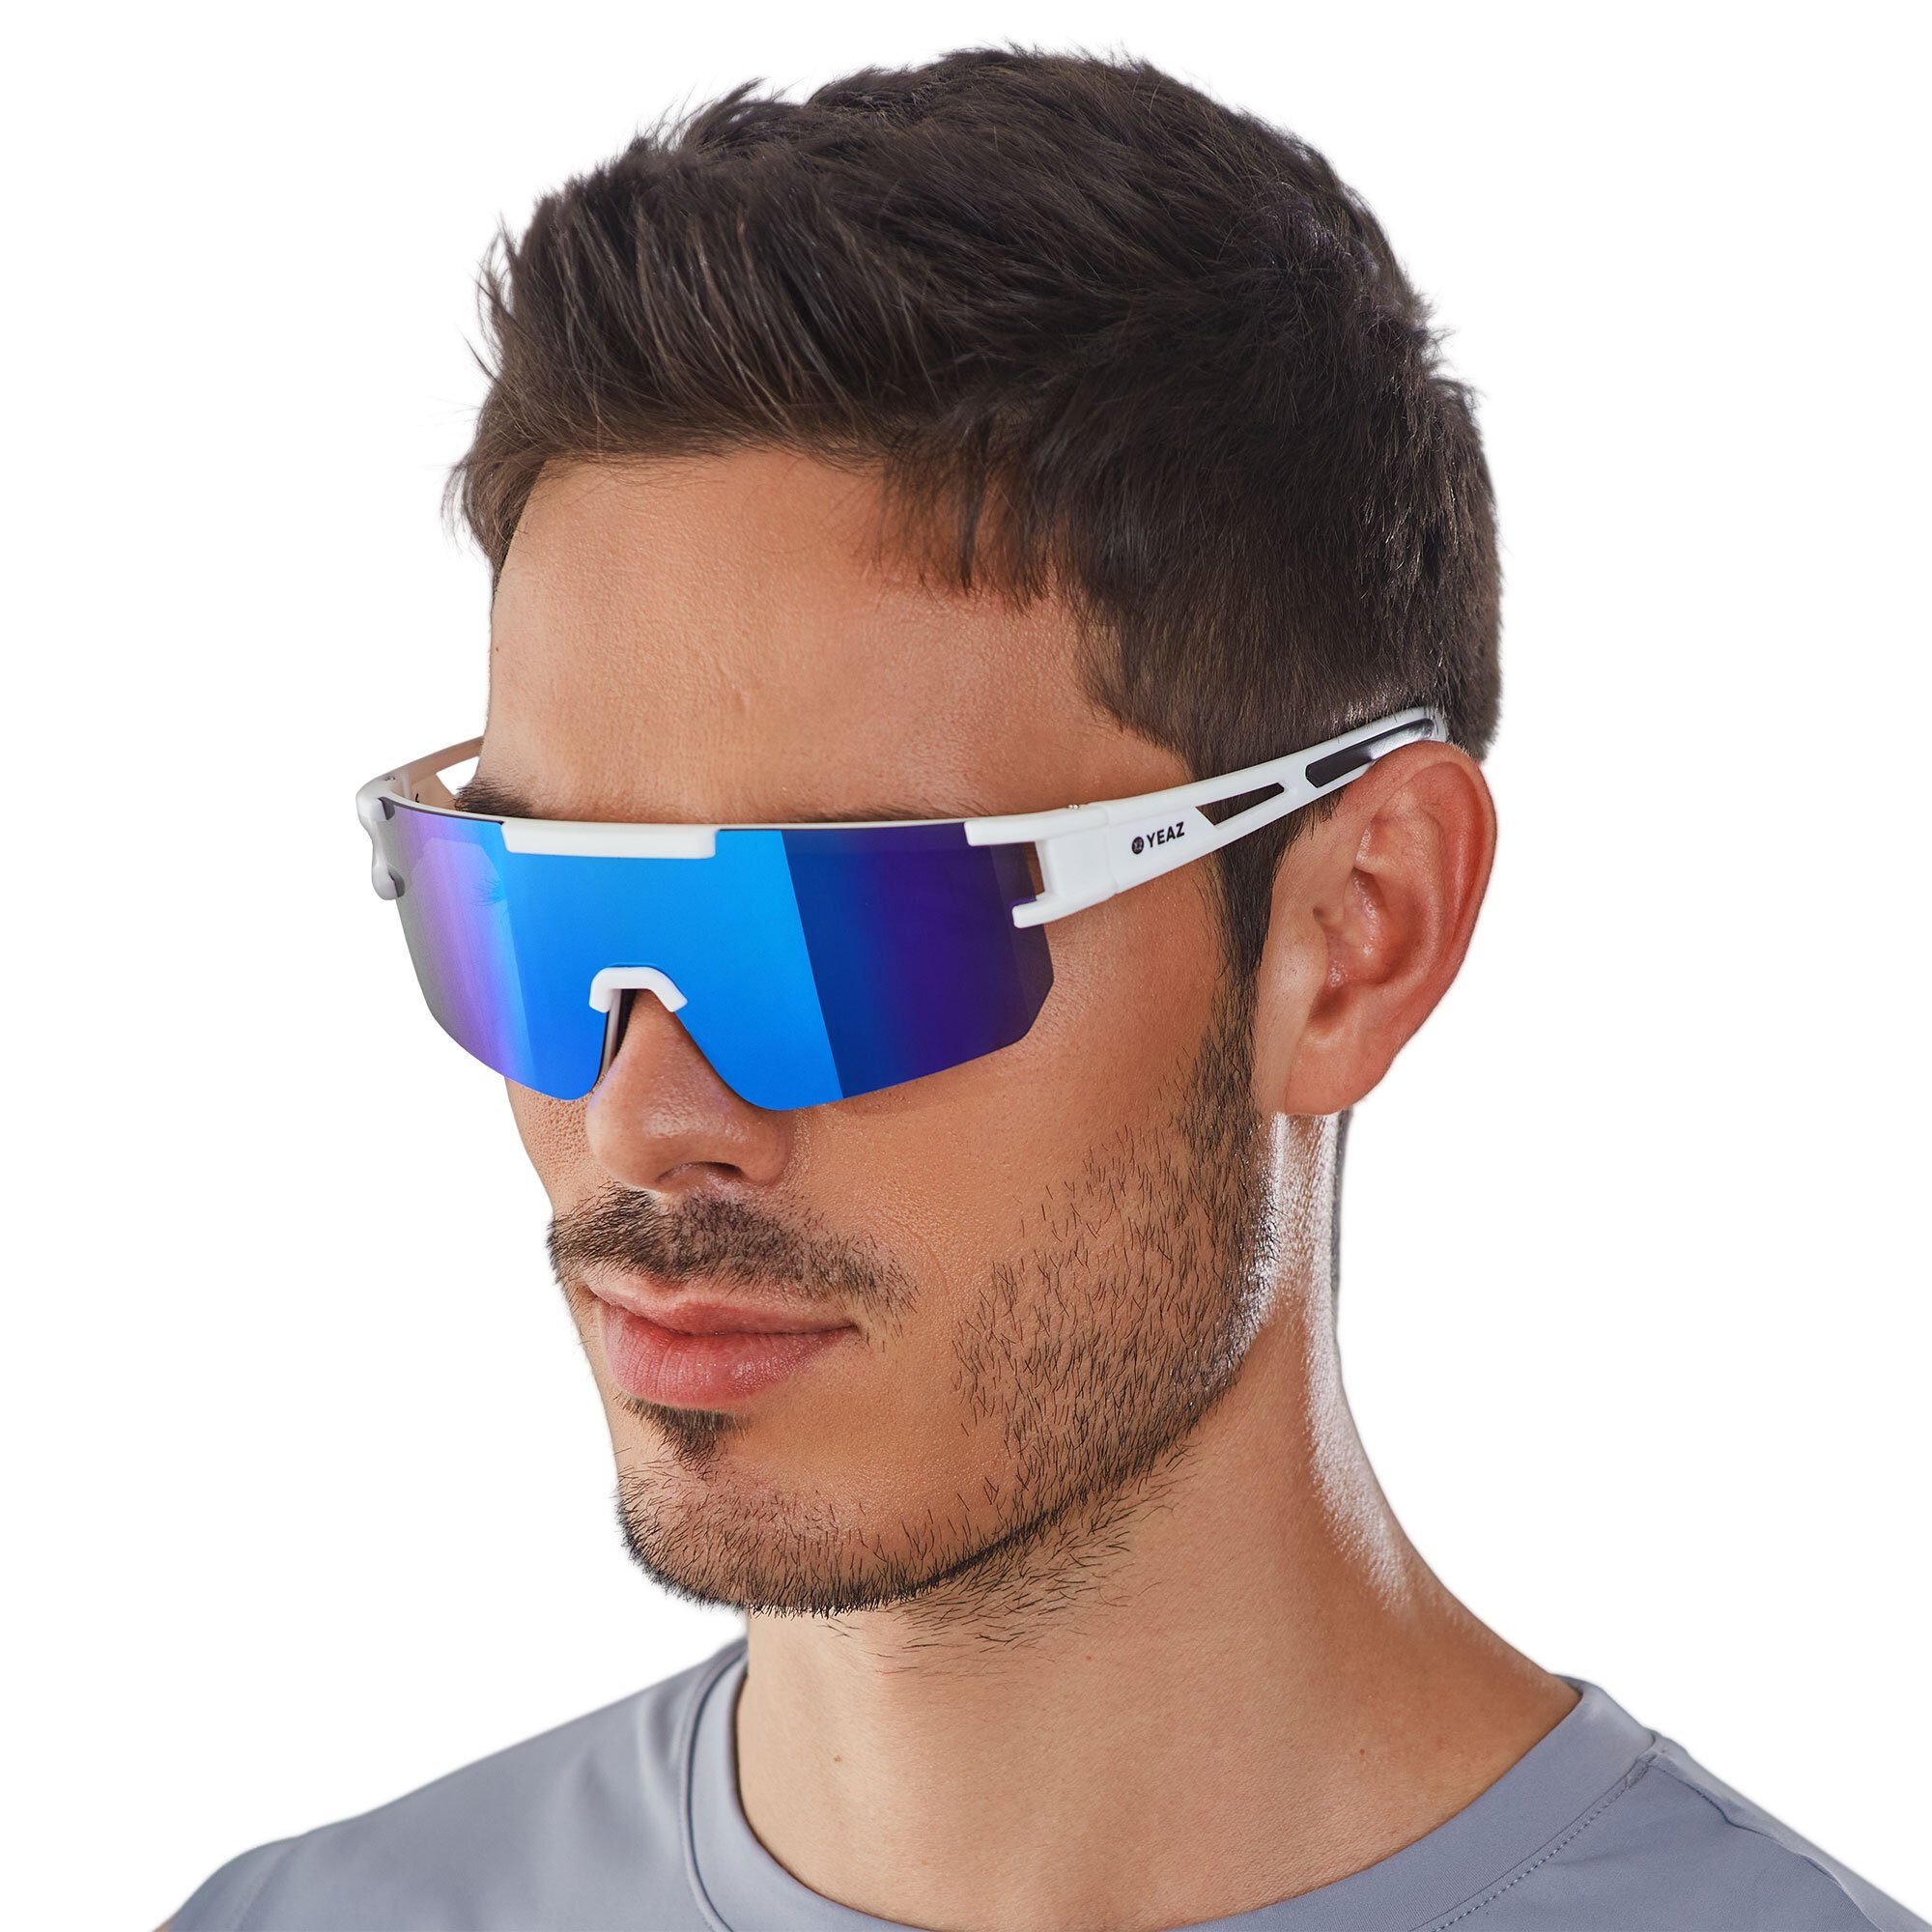 YEAZ Sportbrille SUNSPARK sport-sonnenbrille bright white/blue, Guter Schutz bei optimierter Sicht